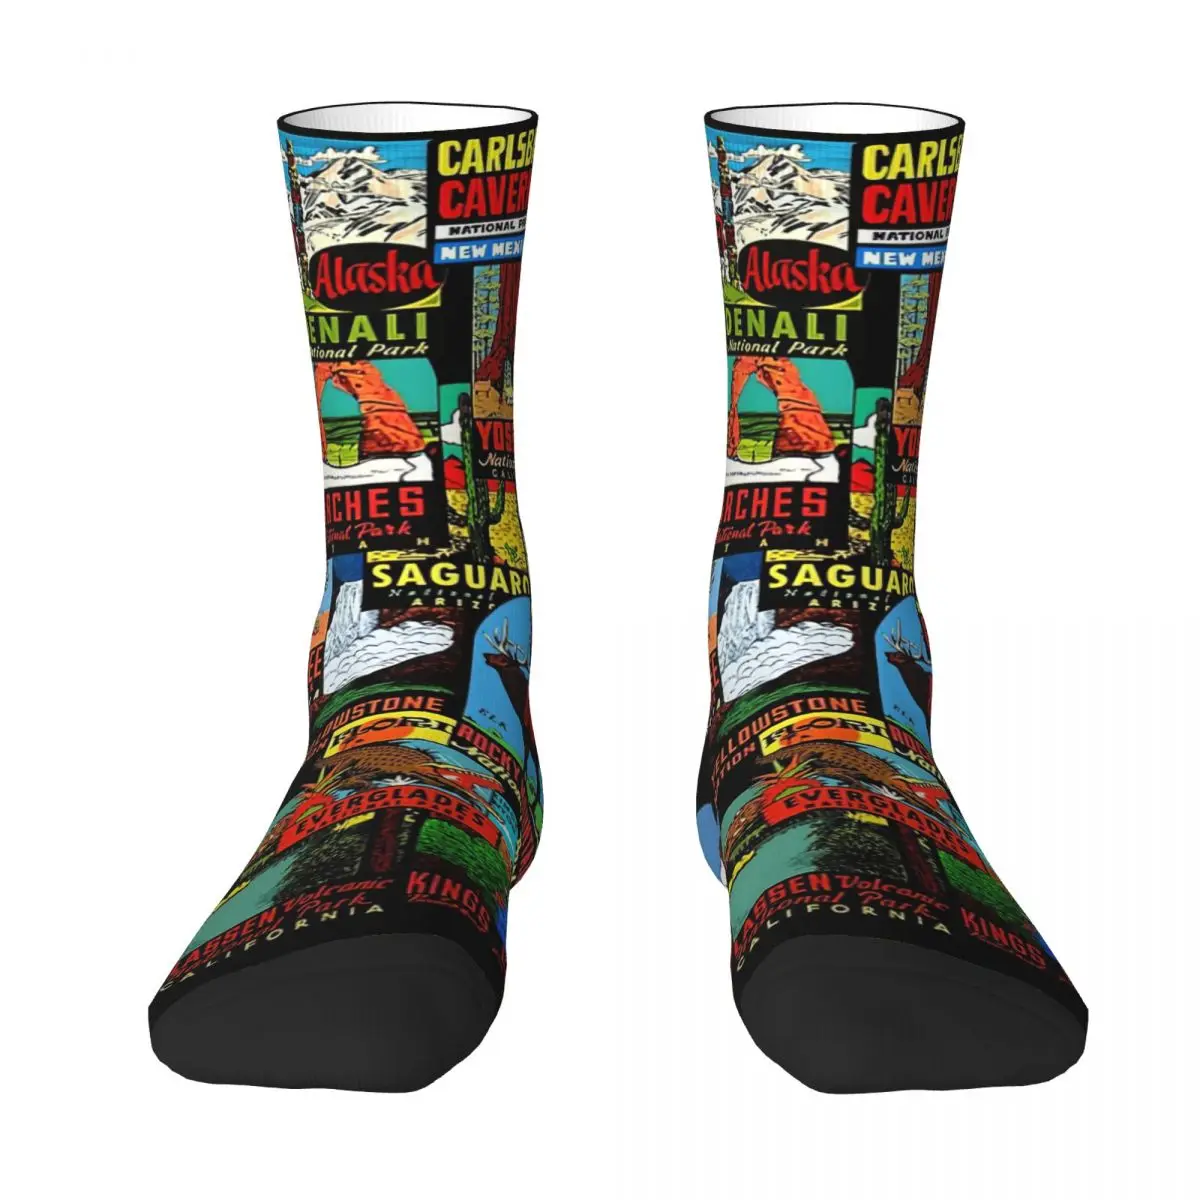 American National Parks Vintage Travel Decal Bomb (1) Adult Socks Unisex socks,men Socks women Socks